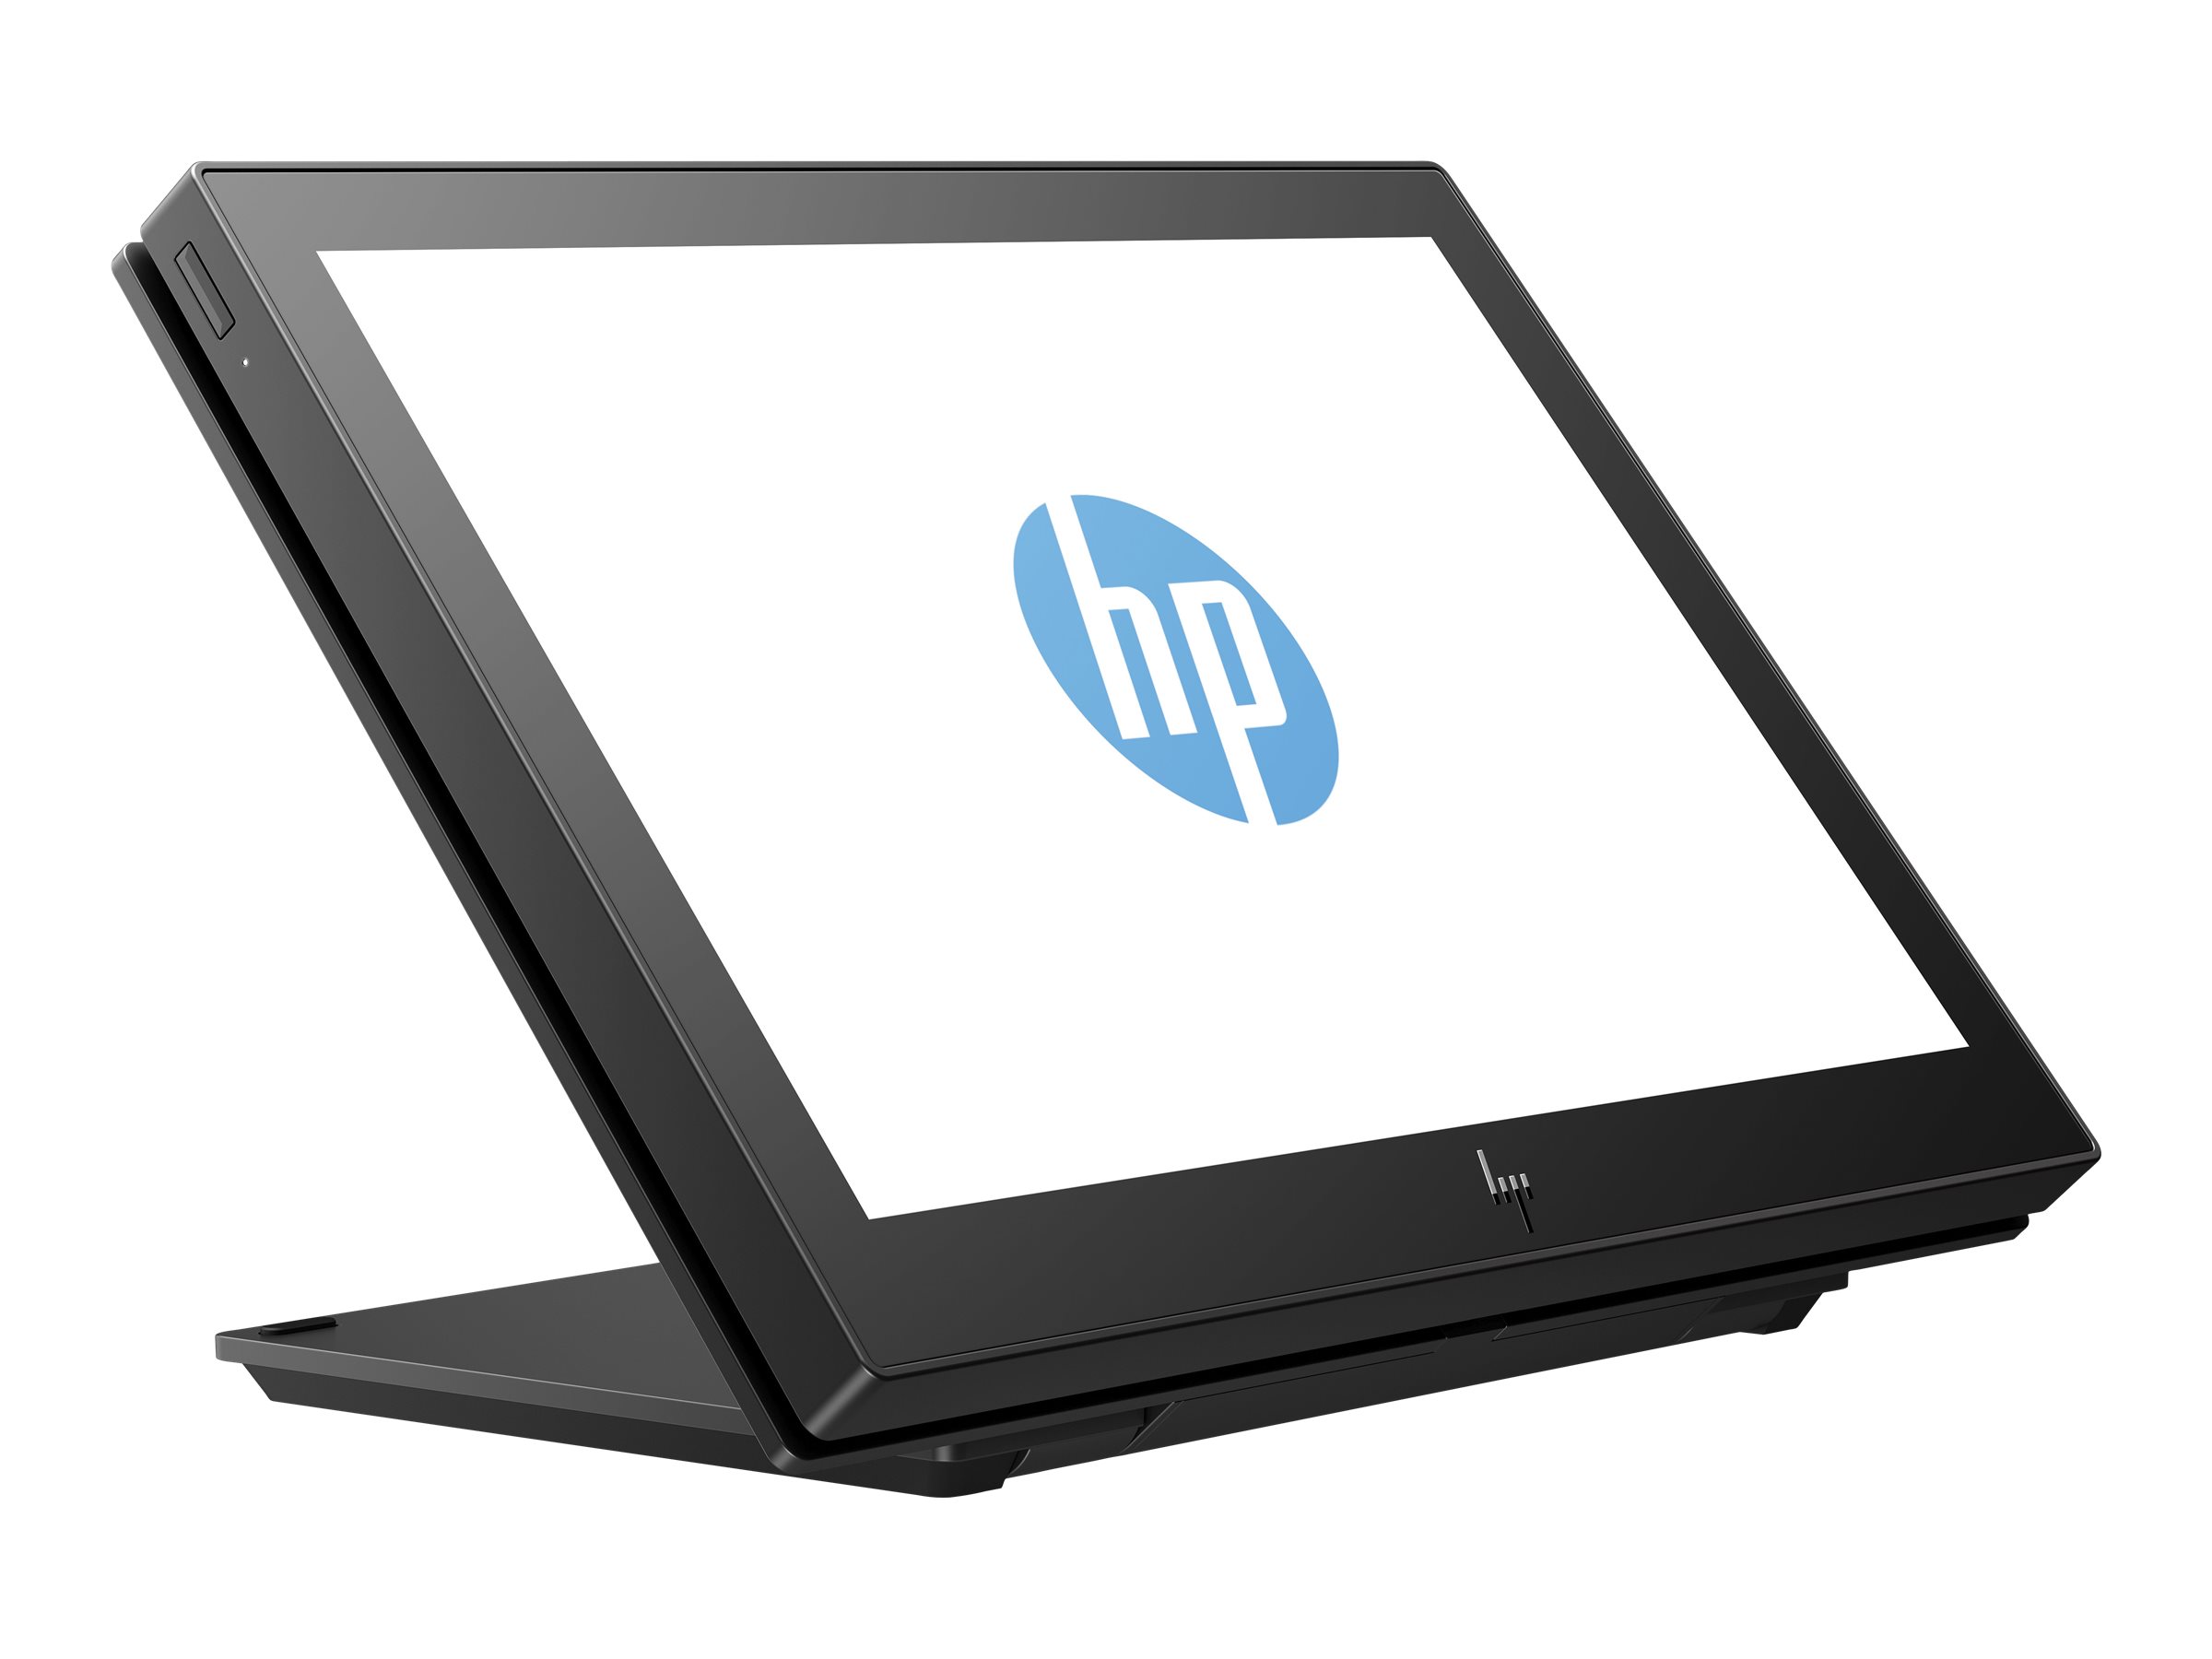 HP Engage One 10t - Affichage client - 10.1" - écran tactile - 1280 x 800 @ 60 Hz - IPS - 25 ms - pour EliteBook 745 G5, 830 G6, 840 G5, 840 G6; Engage One Essential, Pro; ZBook Studio G4 - 1XD81AA - Écrans pour point de vente